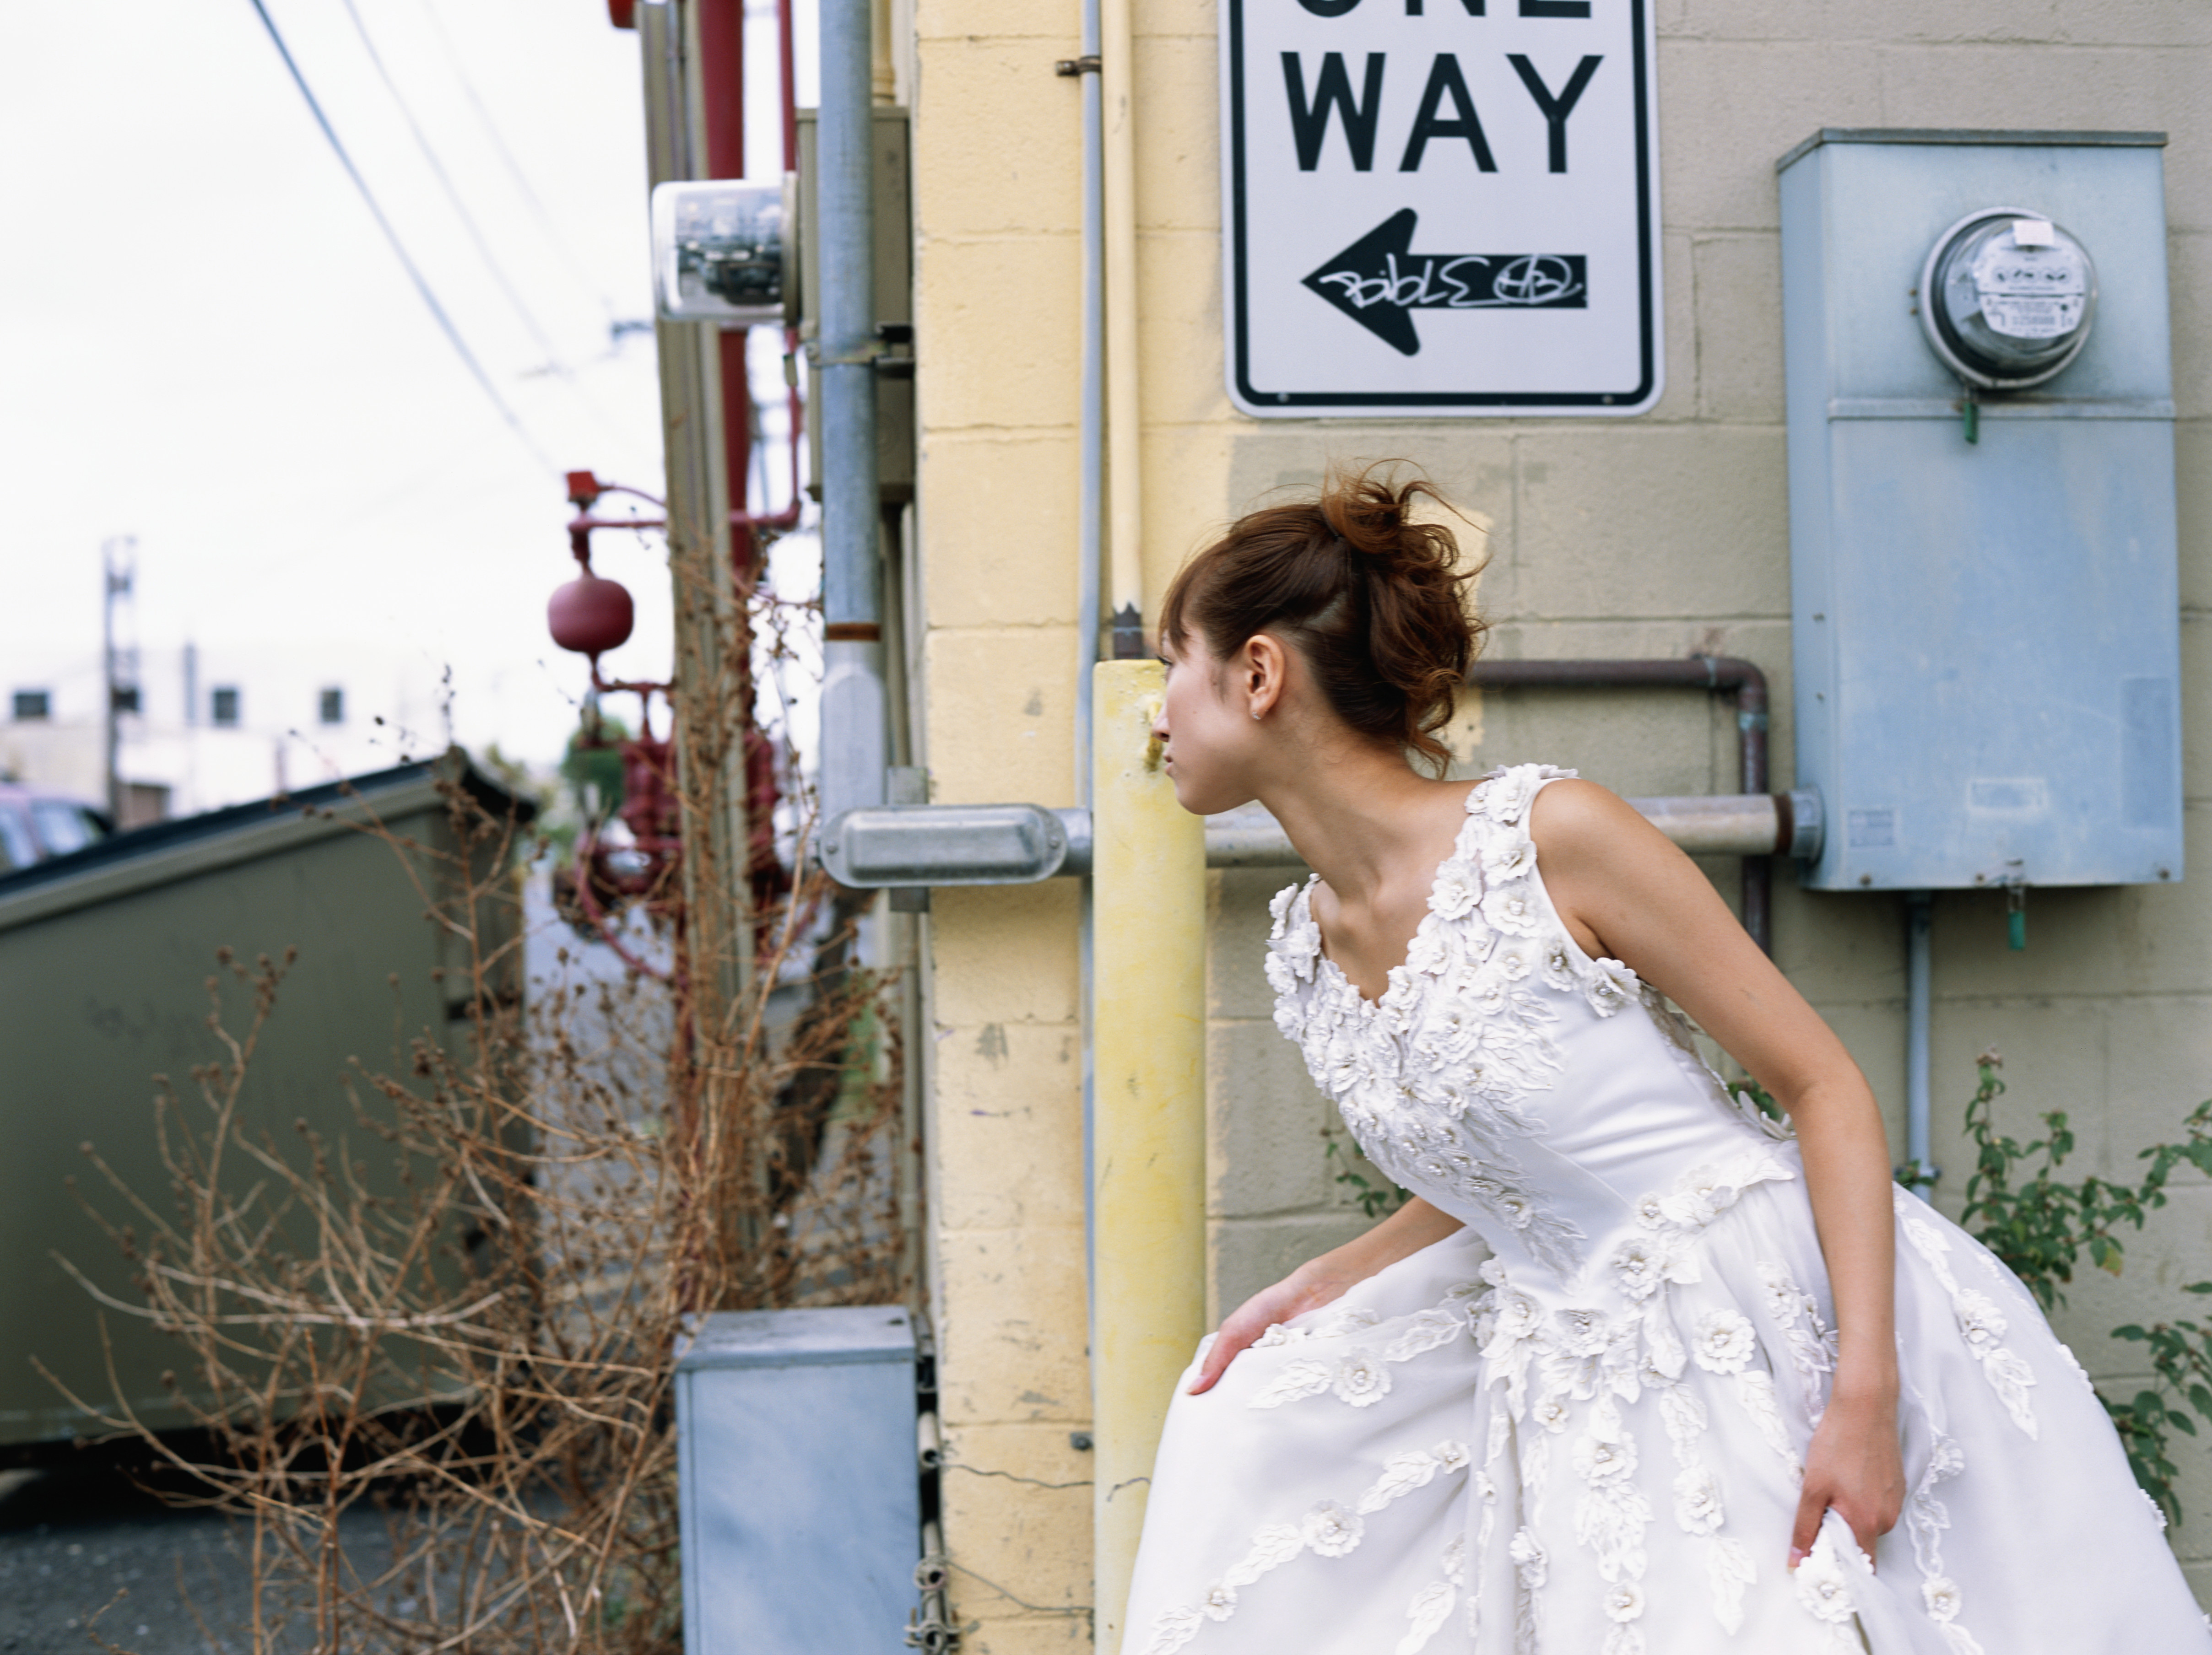 Braut läuft weg | Quelle: Getty Images